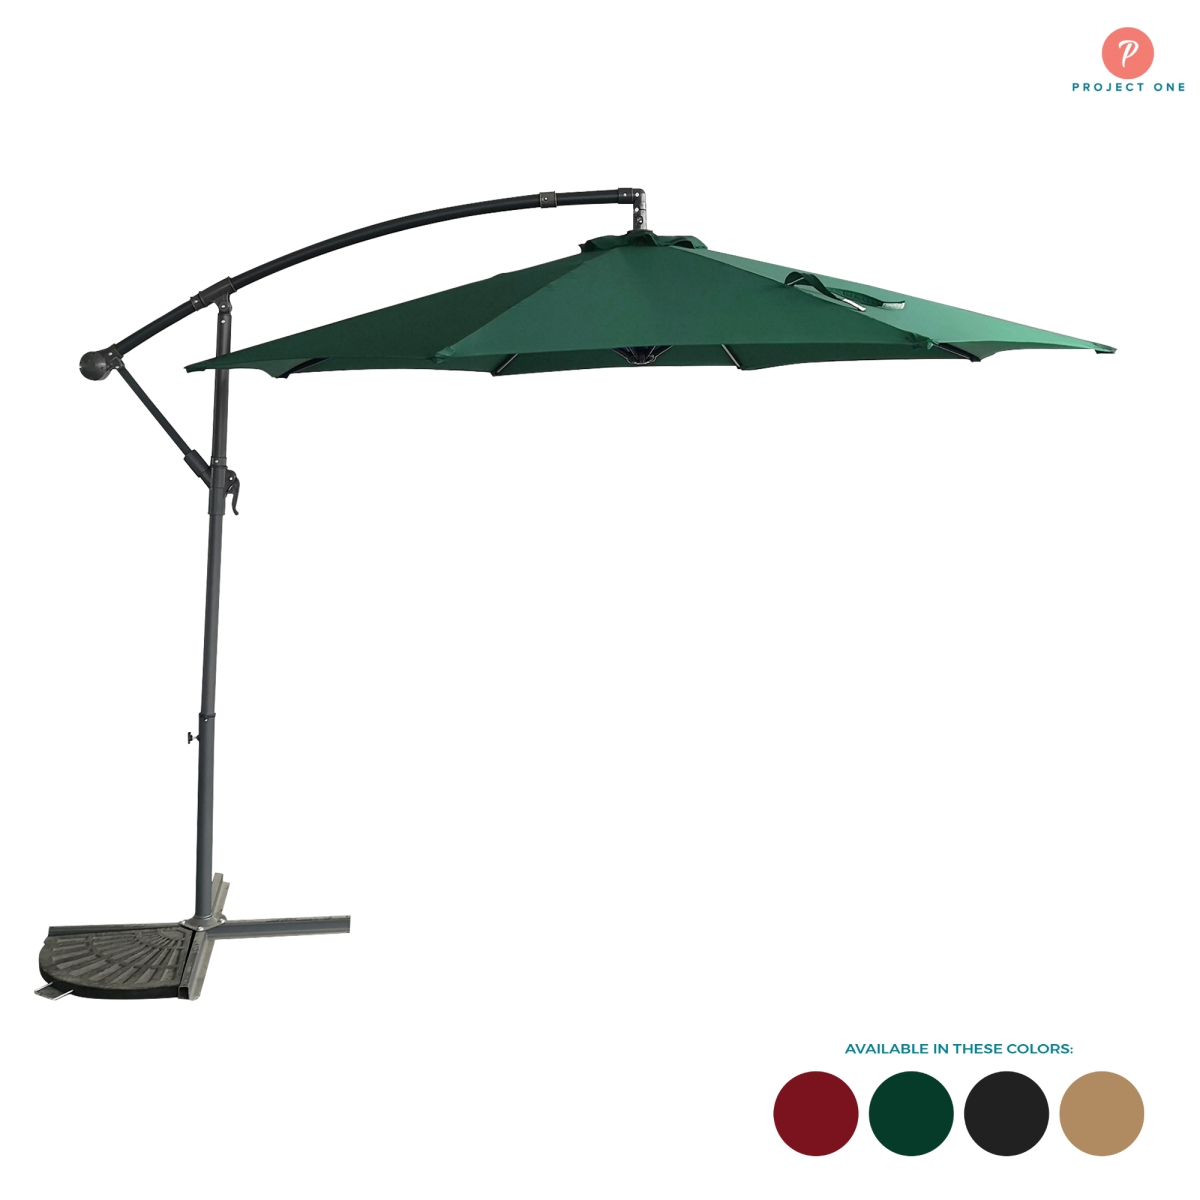 El-1001-grn 10 Ft. Patio Offset Cantilever Outdoor Umbrella, Green